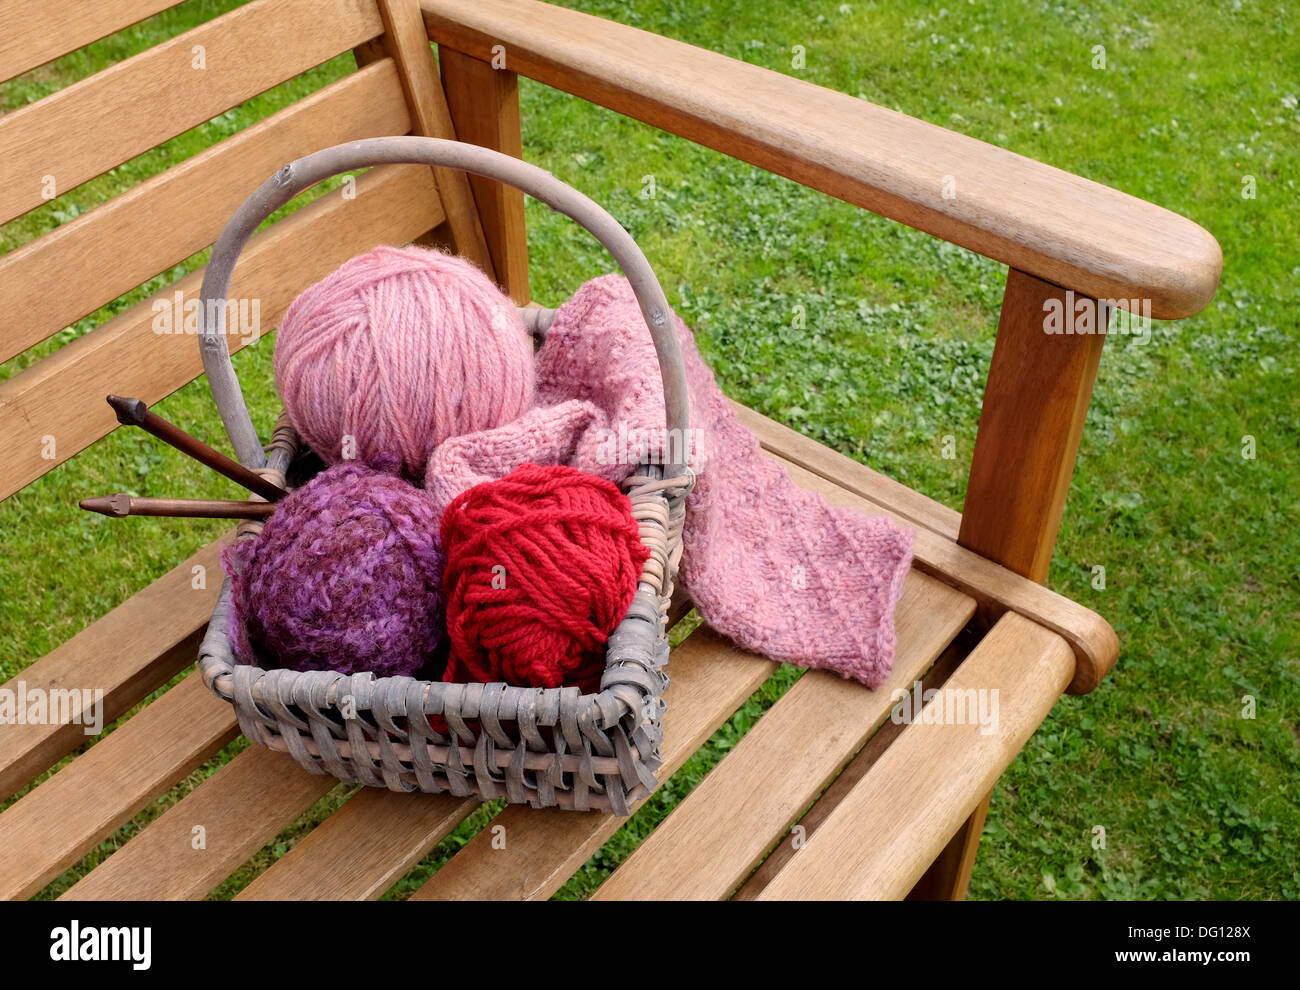 Handwerk-Korb mit gemusterten stricken, Kugeln aus Wolle und Holz Nadeln auf eine Gartenbank Stockfoto